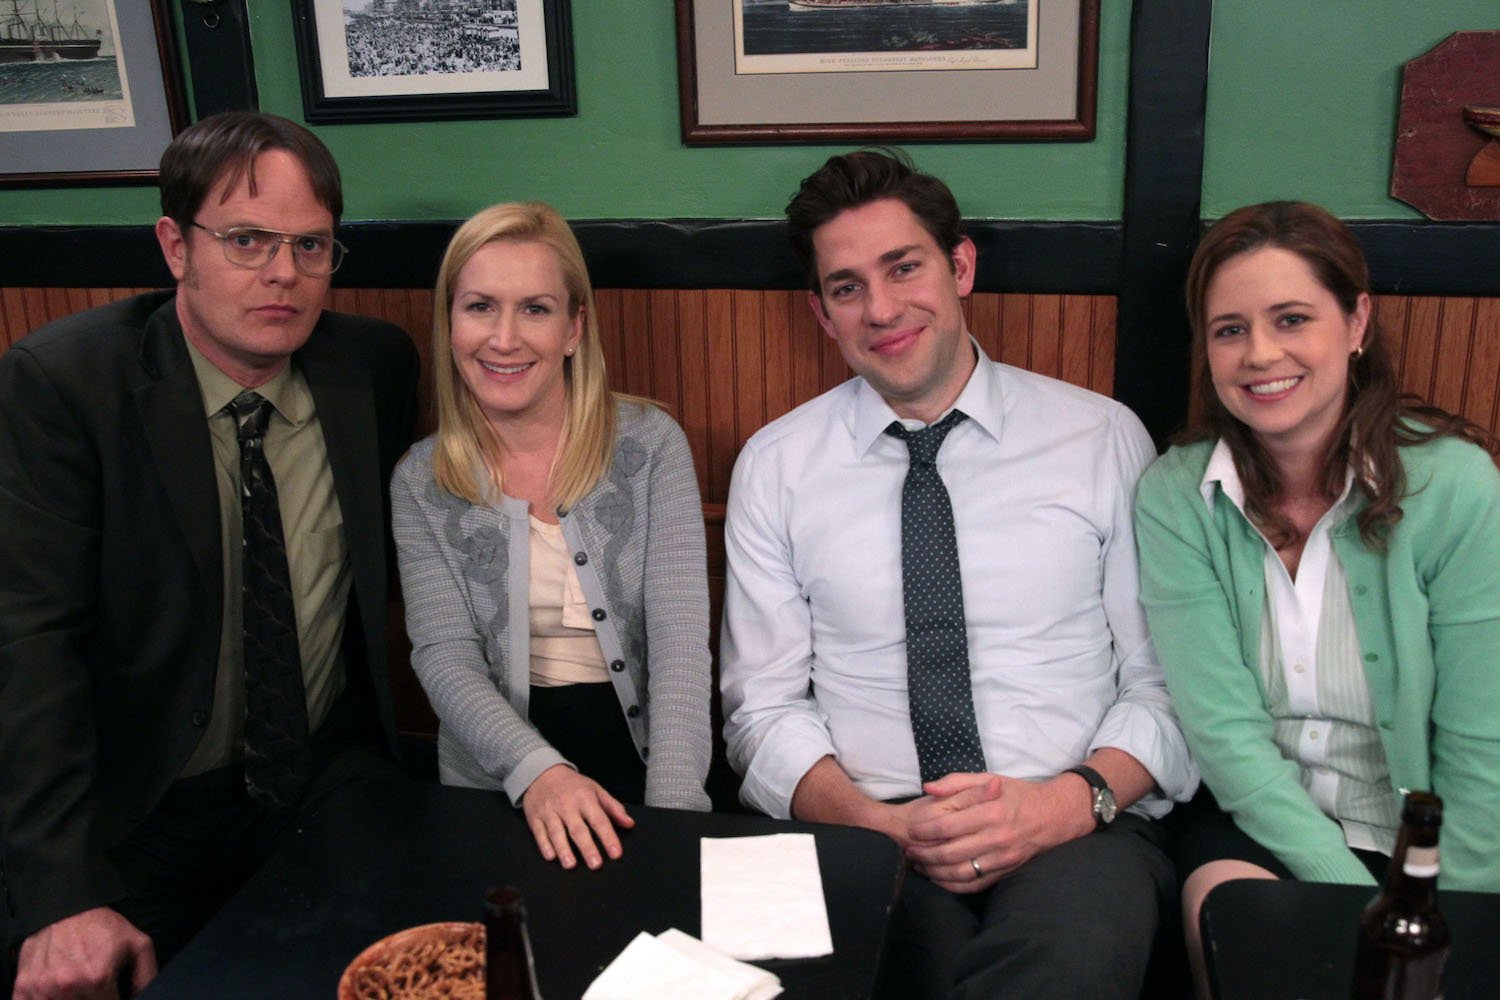 Rainn Wilson, Angela Kinsey, John Krasinski and Jenna Fischer on 'The Office'